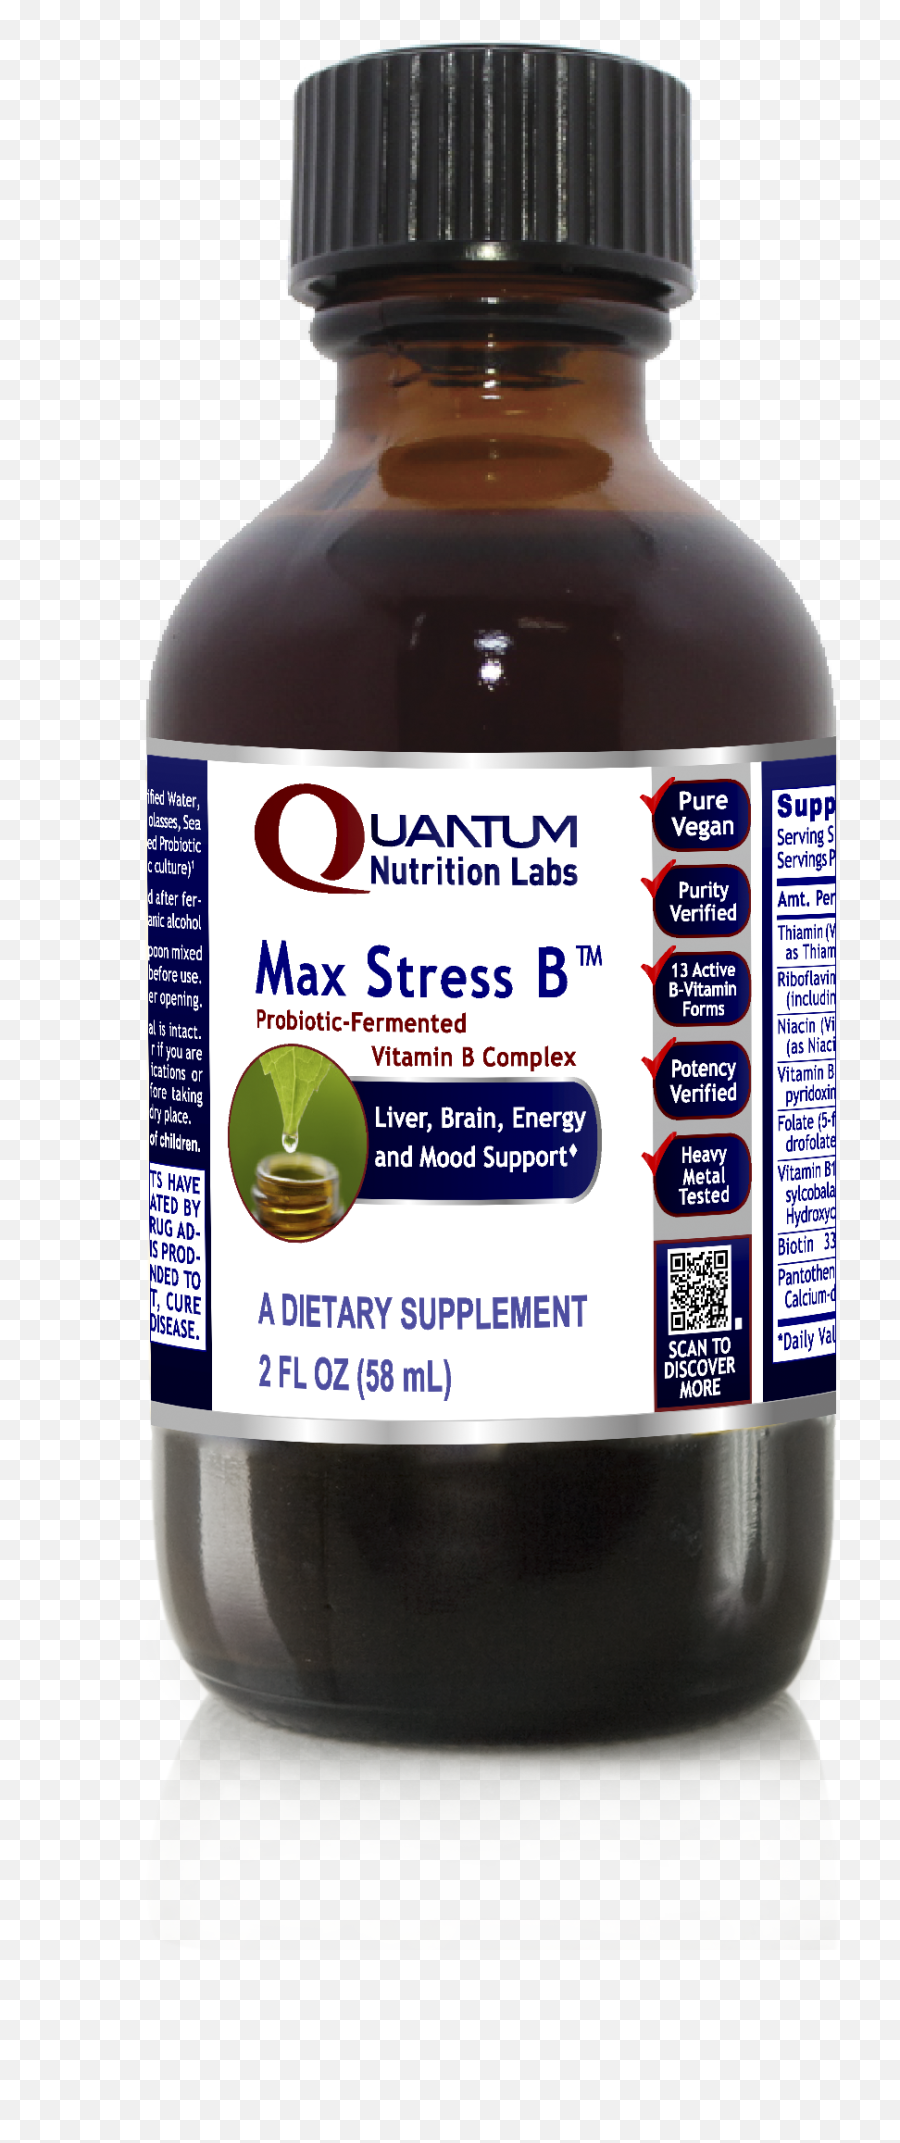 Quantum Max Stress B - Quantum Nutrition Labs Melatonin Quantum Quantum And Immune Support Emoji,Kirrilian Photos Of Emotion